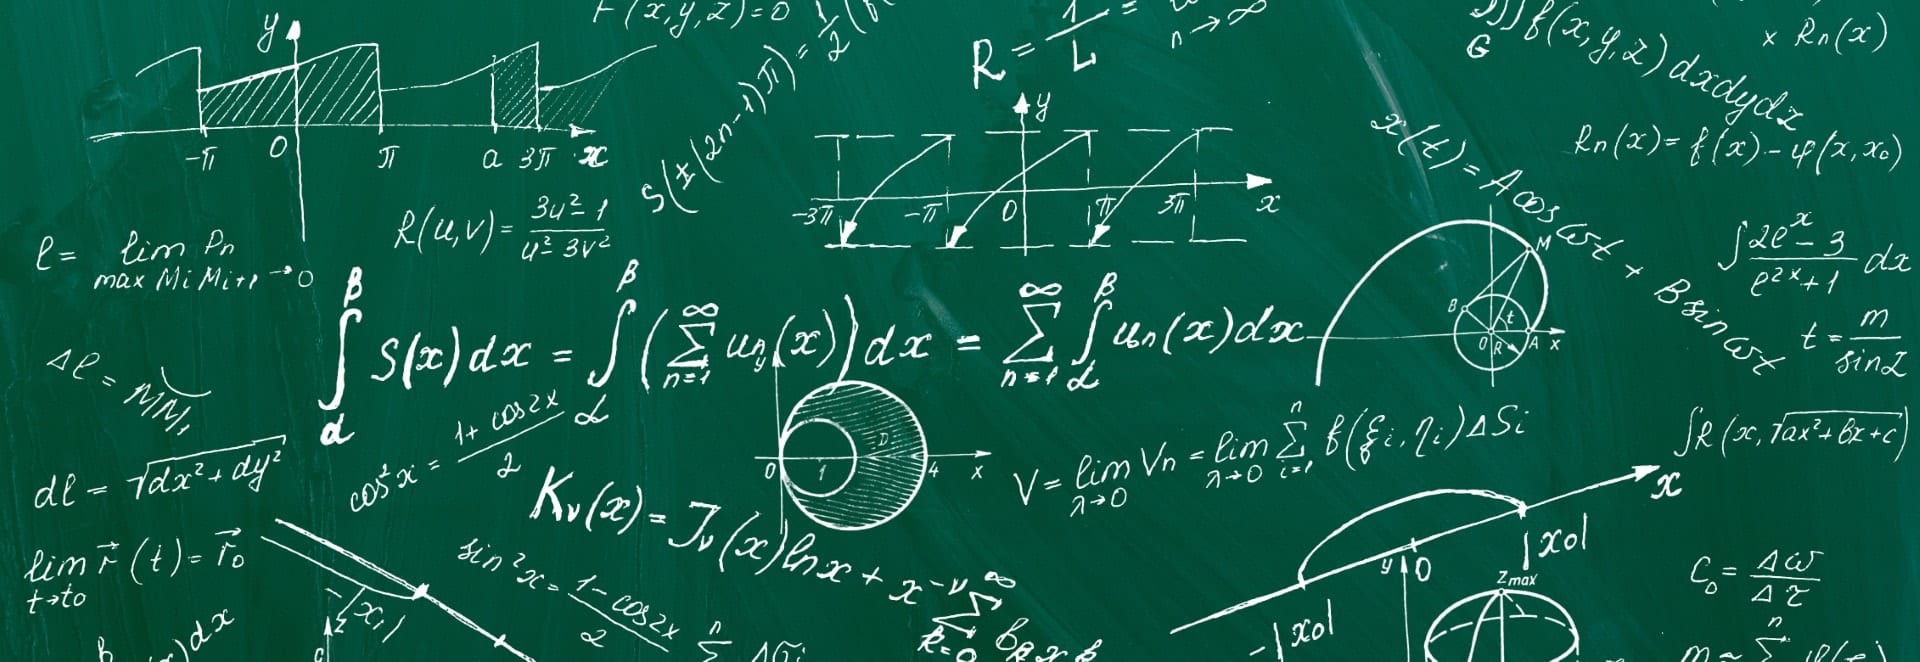 math formulas on chalkboard